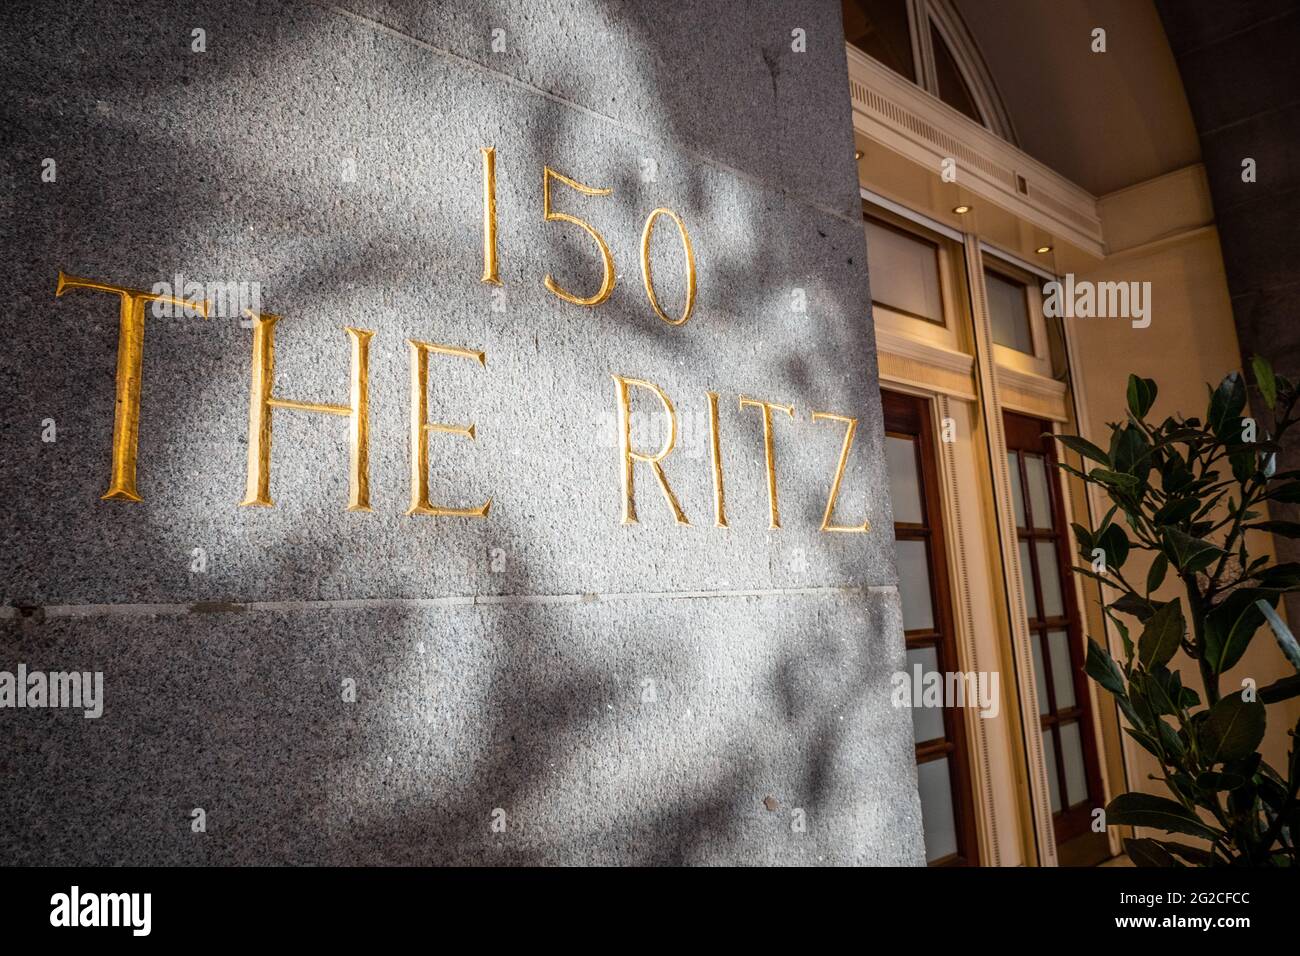 150 The Ritz, London. Das 5-Sterne-Hotel am Piccadilly, das zum Symbol für High Society und Luxus geworden ist, wurde unter der Kategorie II in London gelistet. Stockfoto